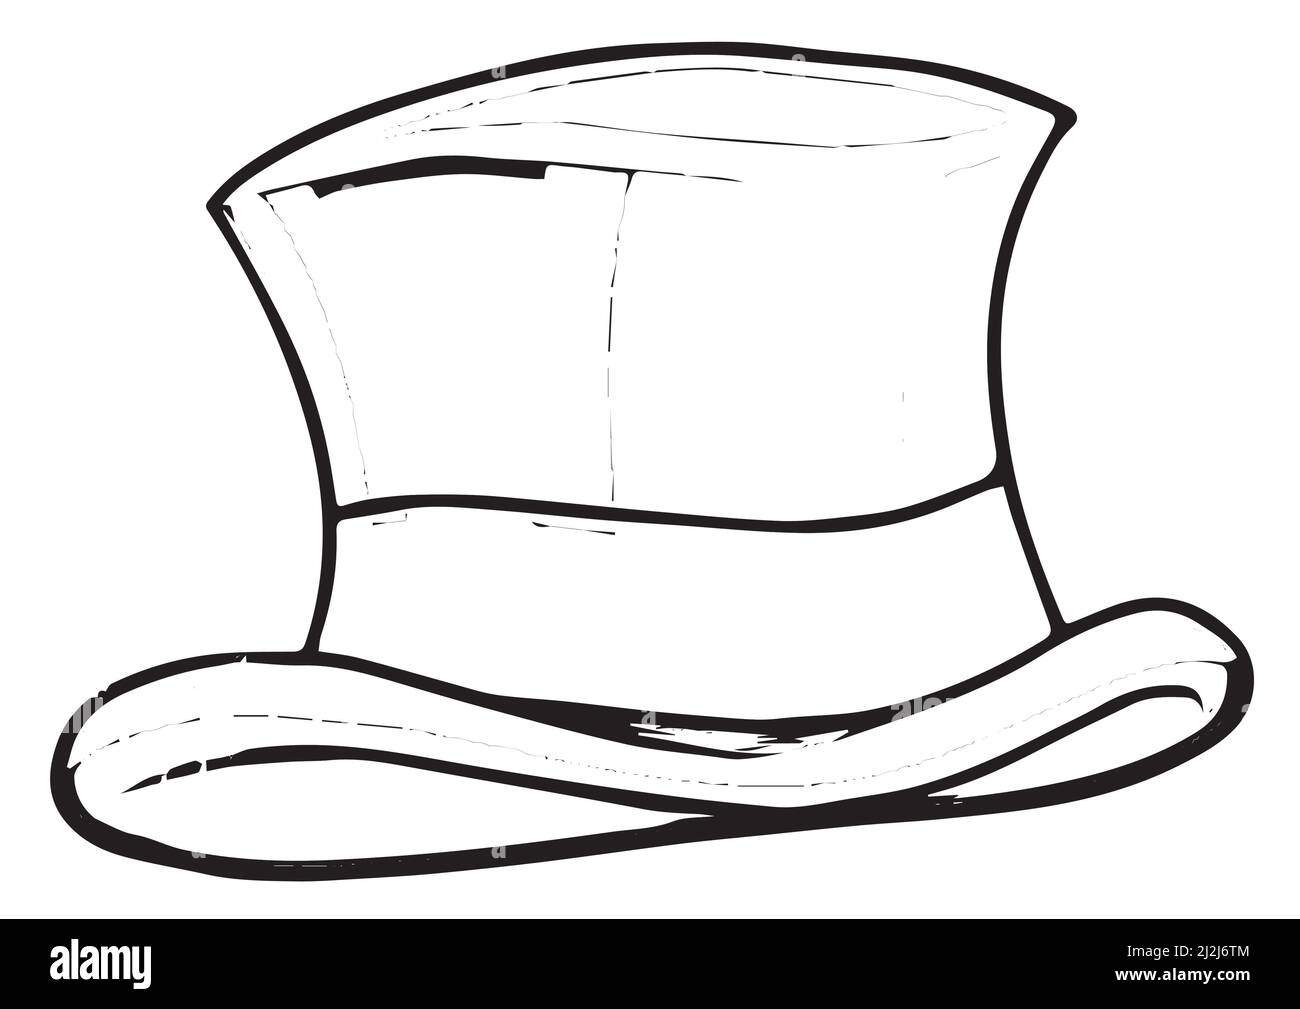 Femme avec chapeau de cowboy Banque d'images détourées - Page 3 - Alamy